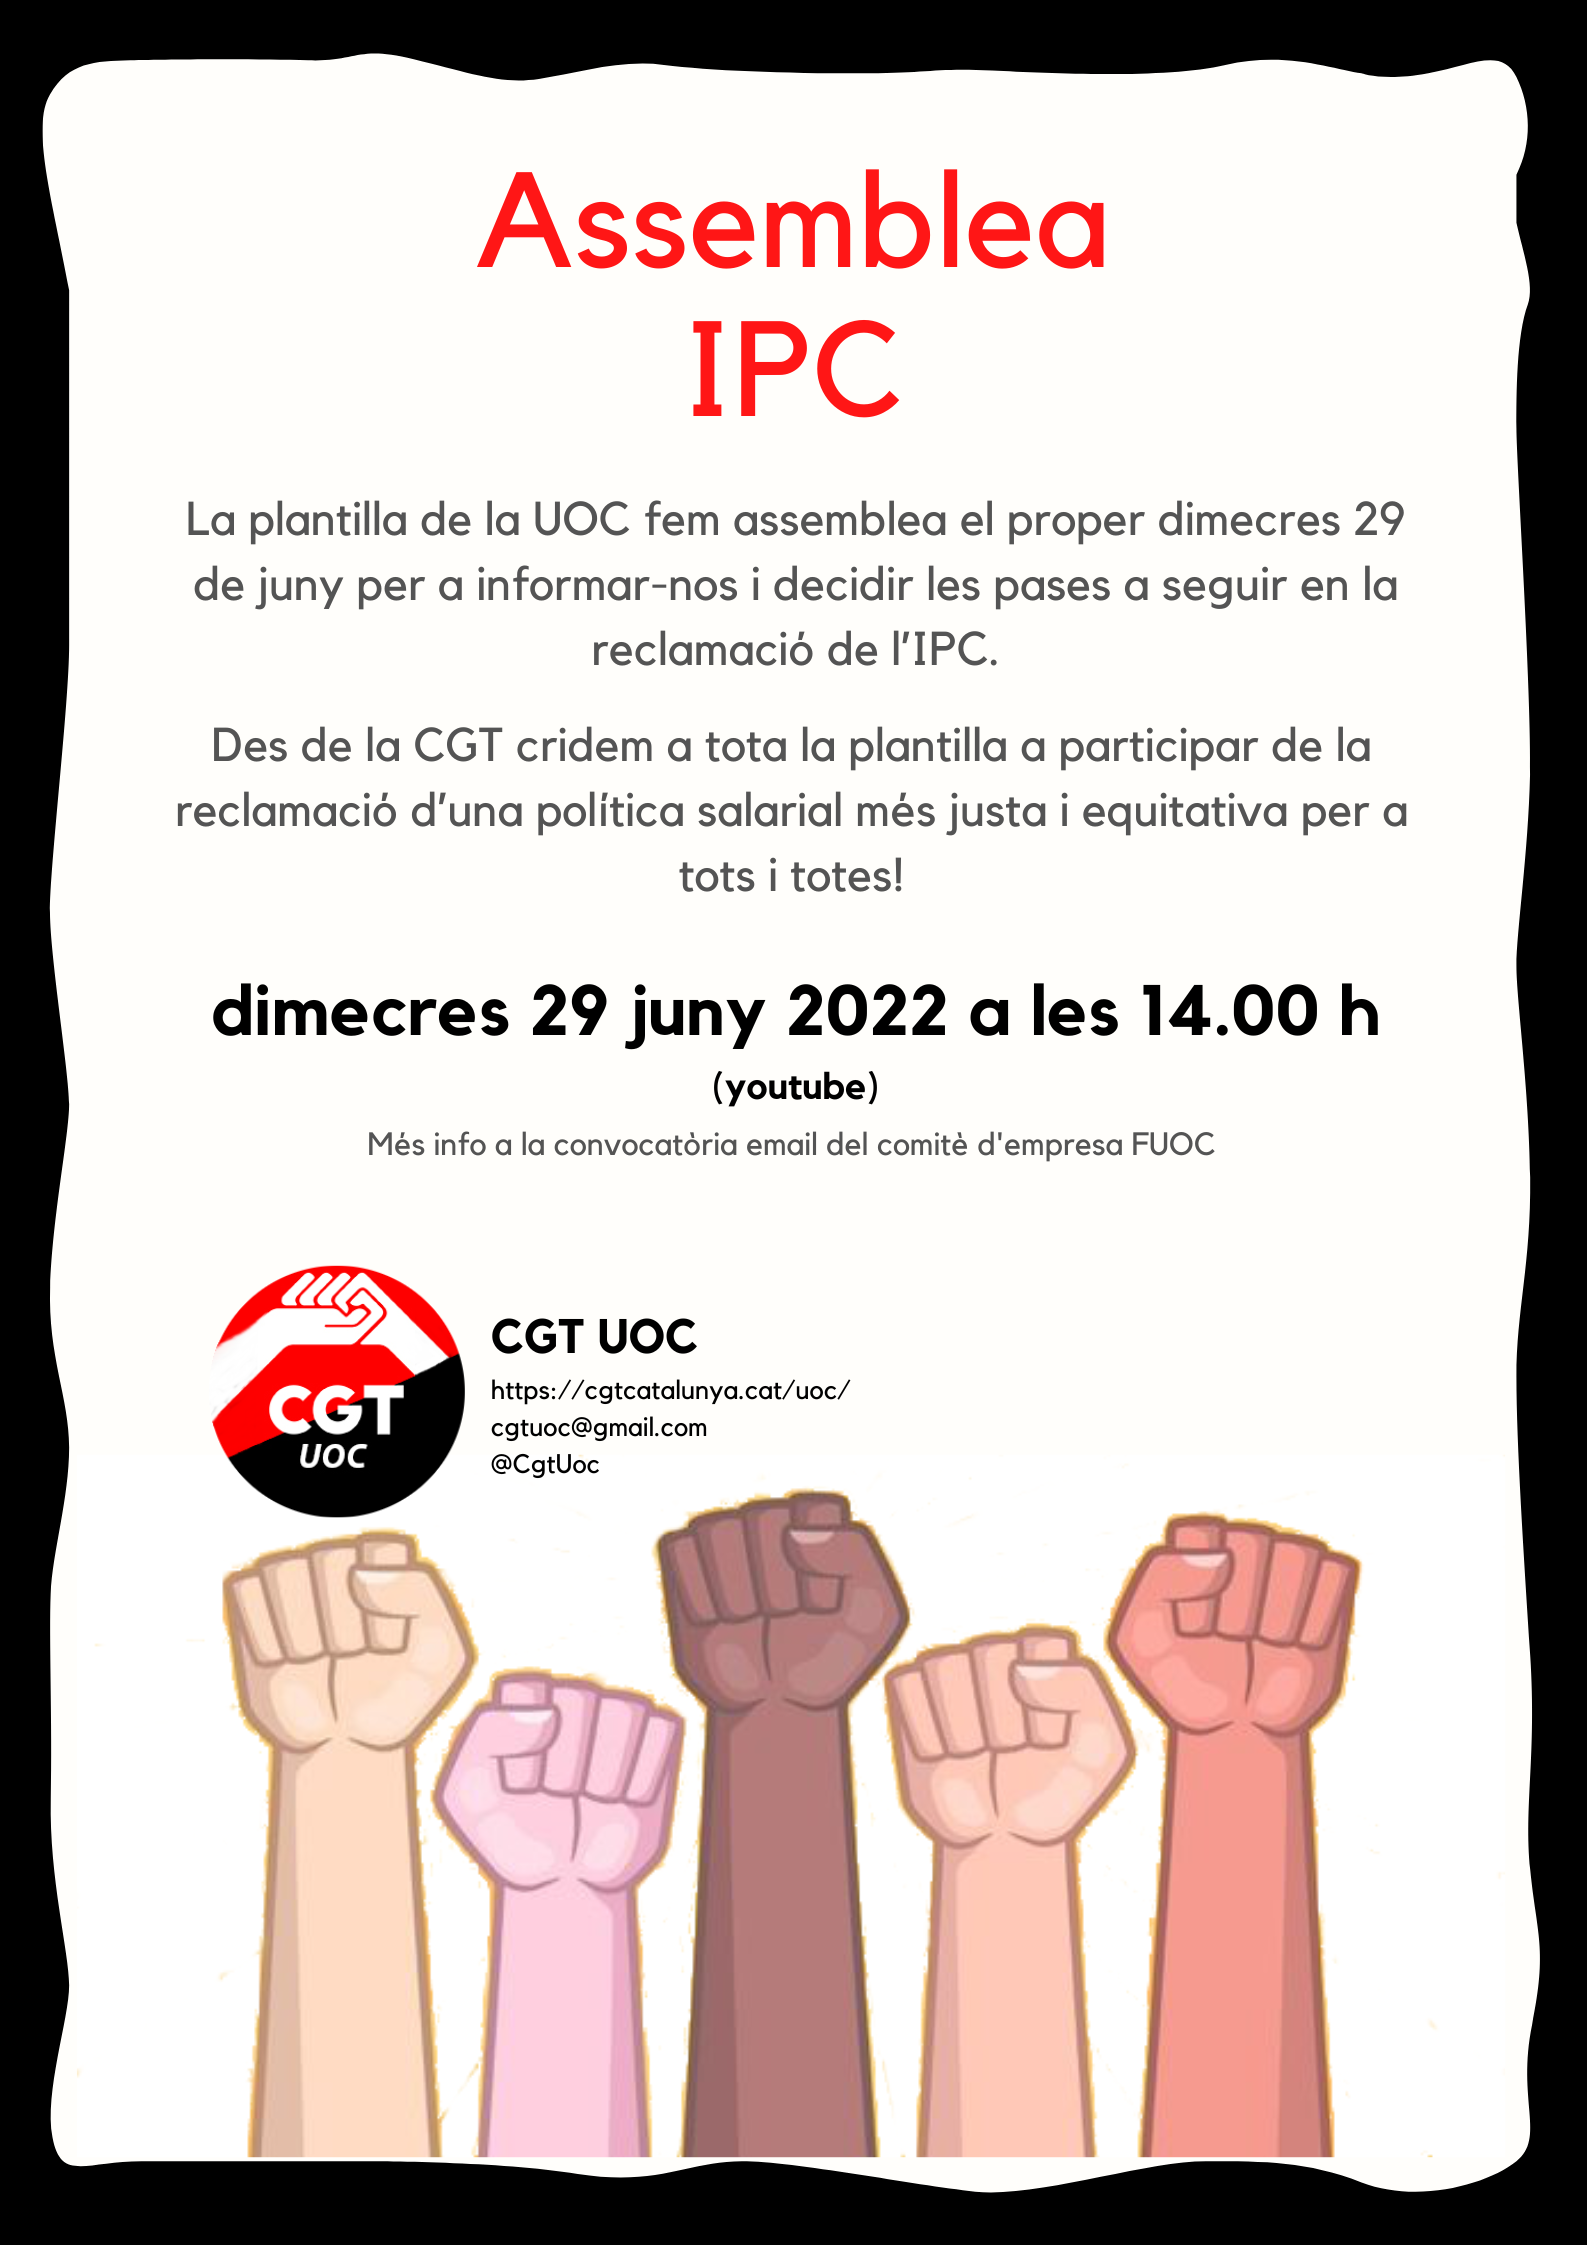 Assemblea IPC votació CGT UOC 29 juny 2022